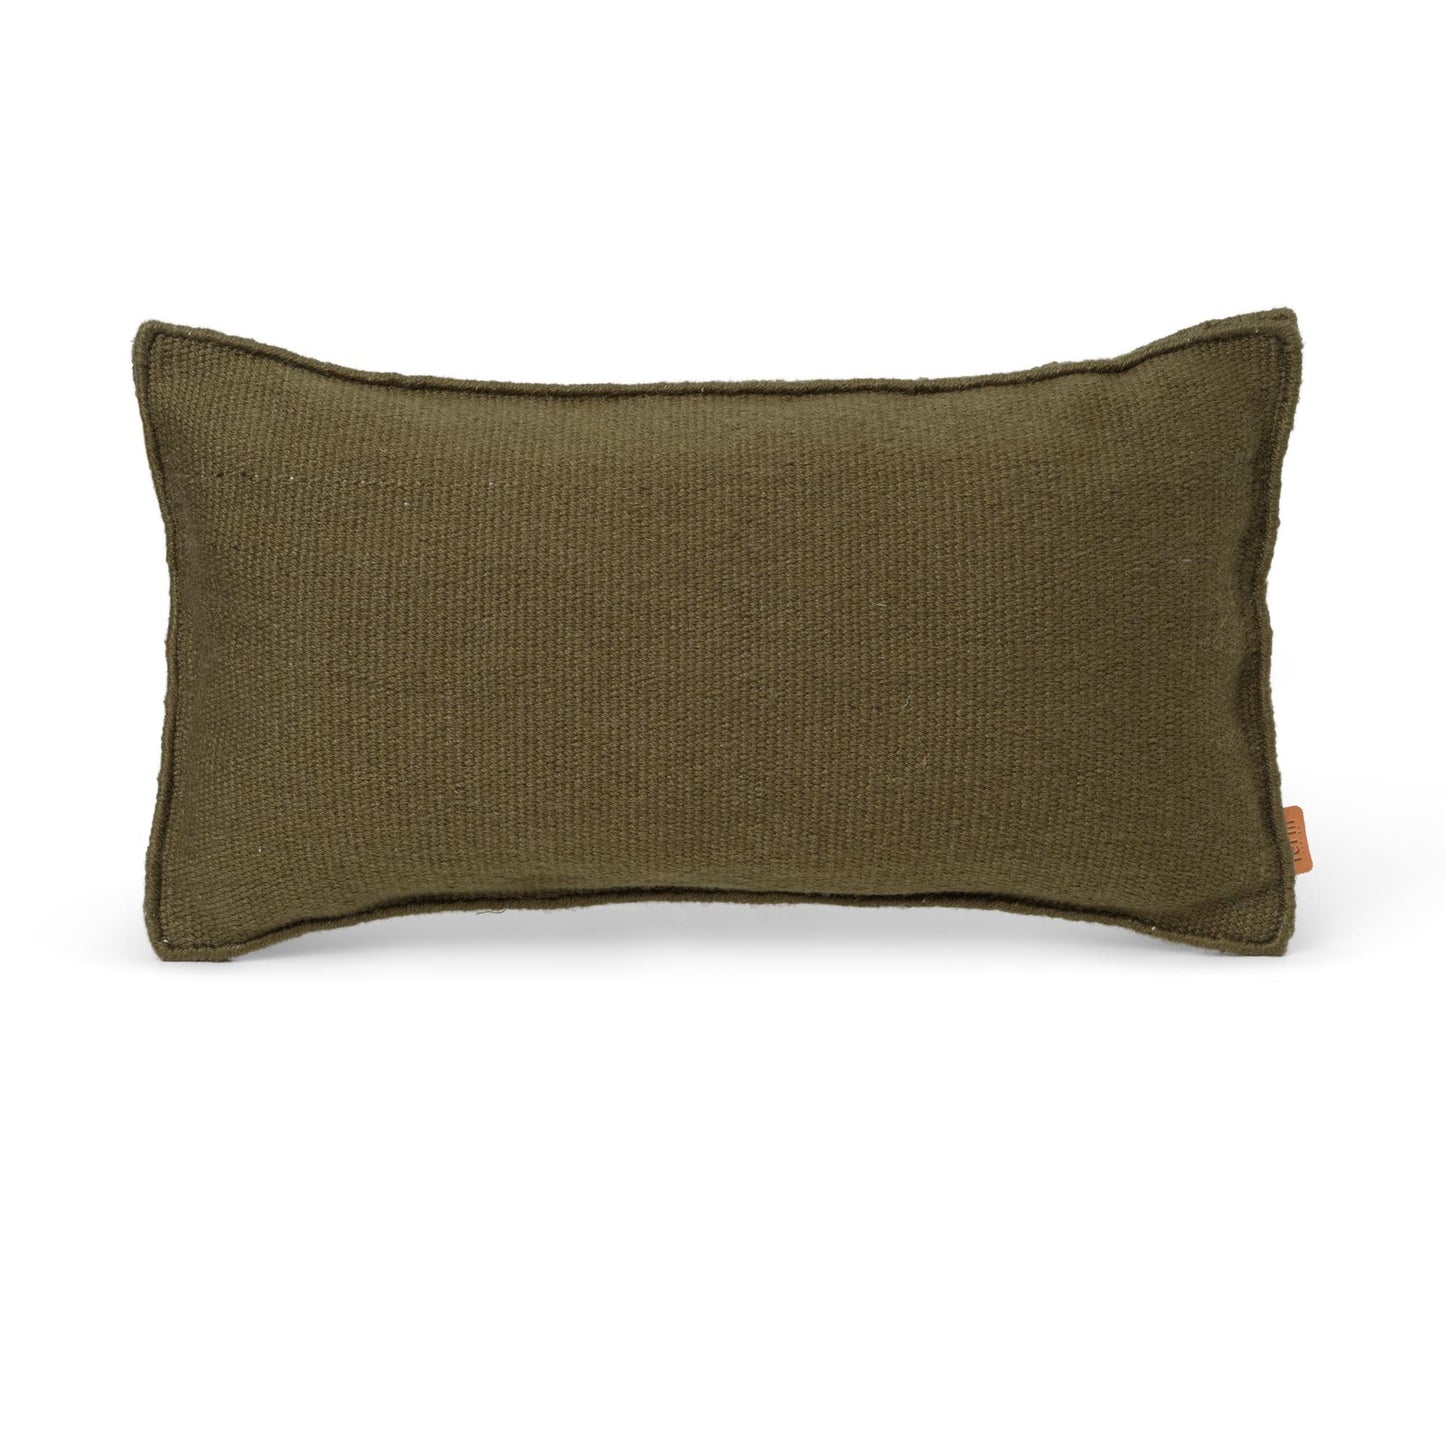 Desert Pillow by Ferm Living #Green